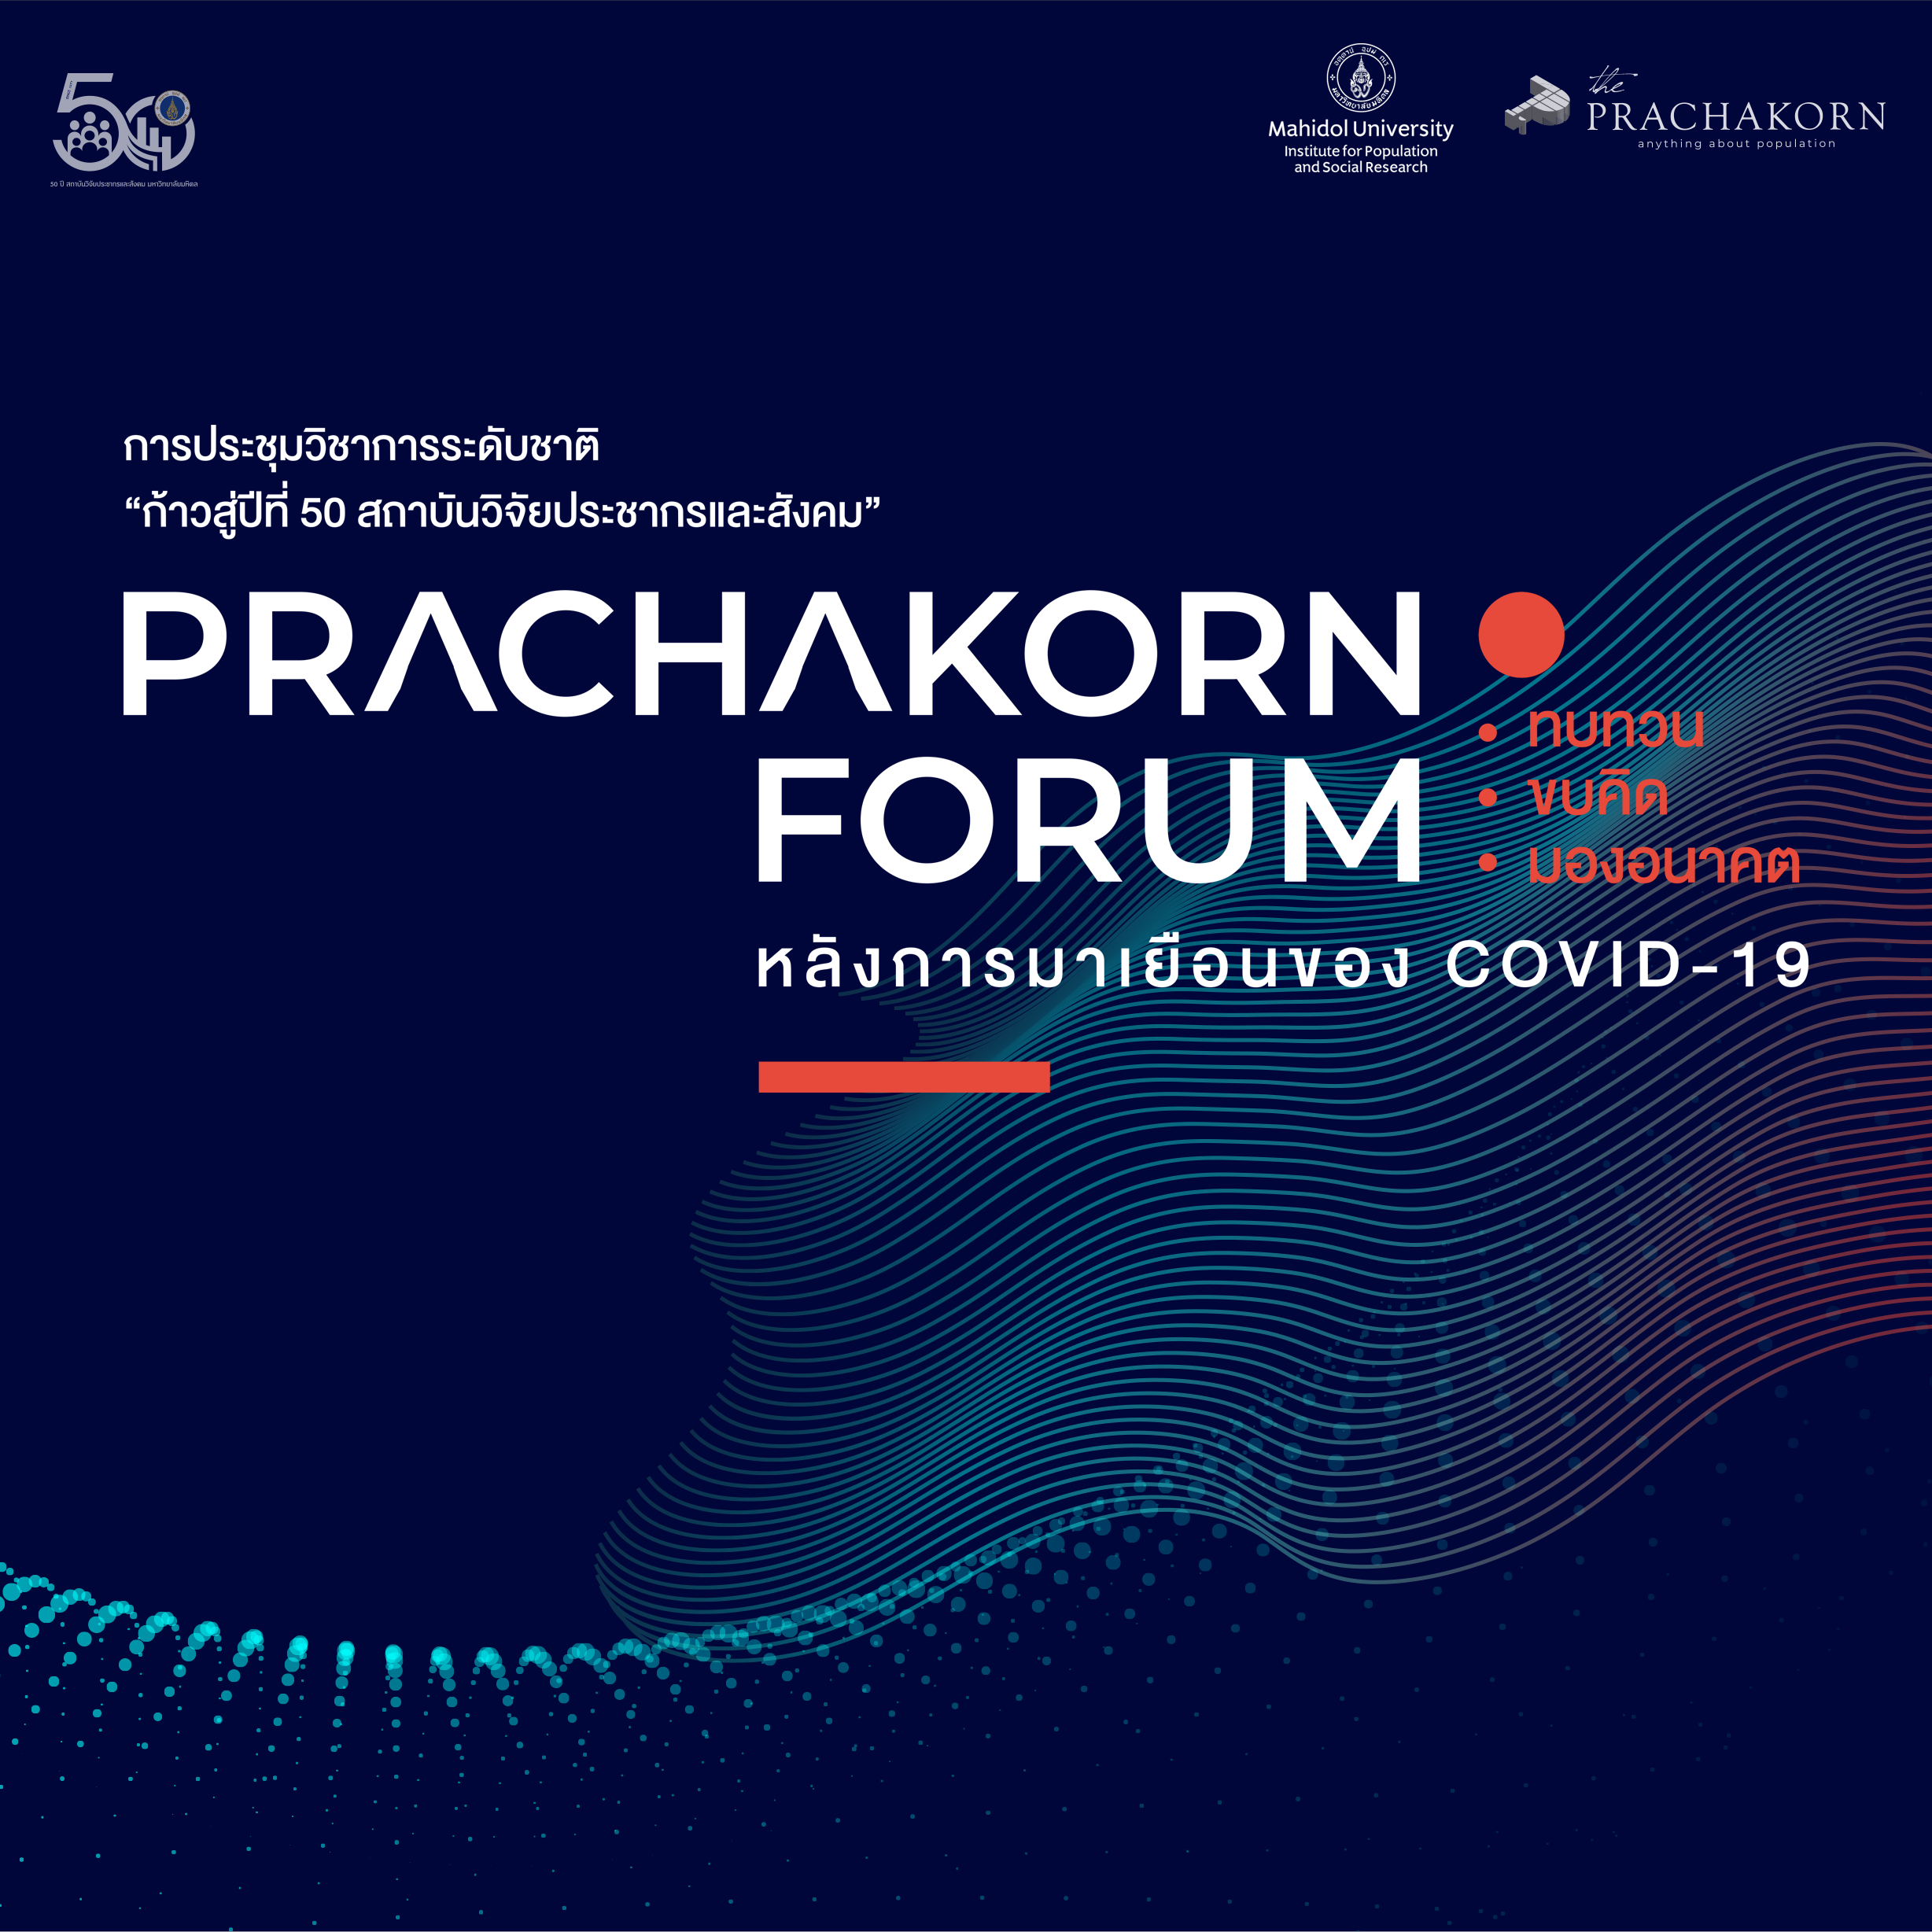 Prachakorn Forum